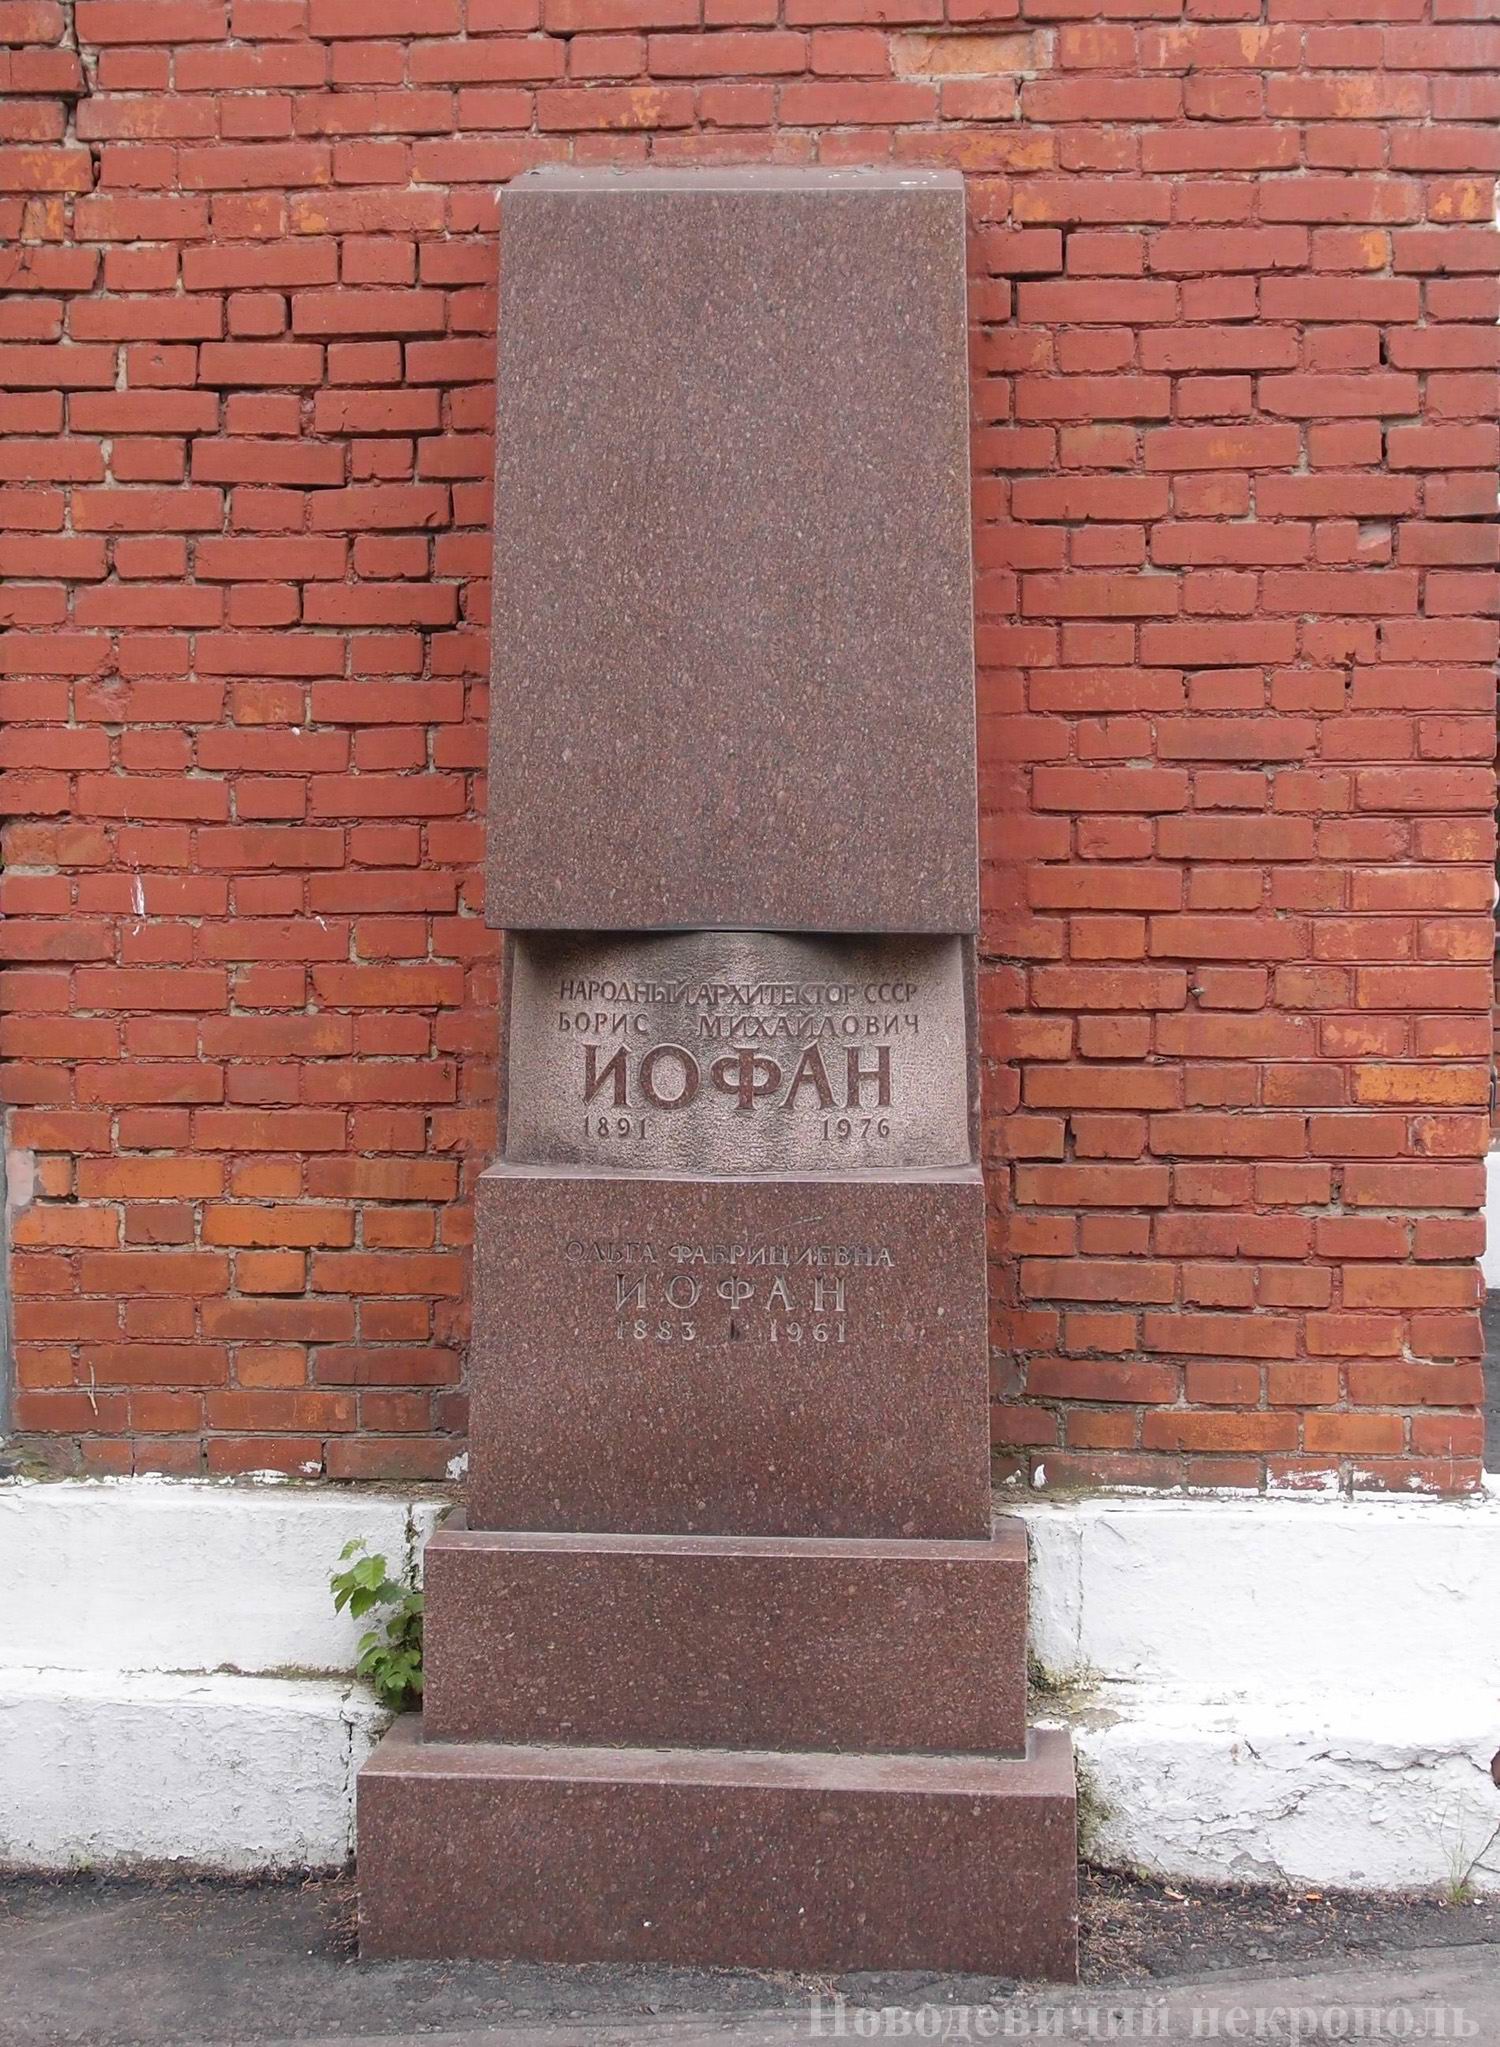 Памятник на нише Иофана Б.М. (1891-1976), на Новодевичьем кладбище ([134-135]). Нажмите левую кнопку мыши, чтобы увидеть другой вариант.